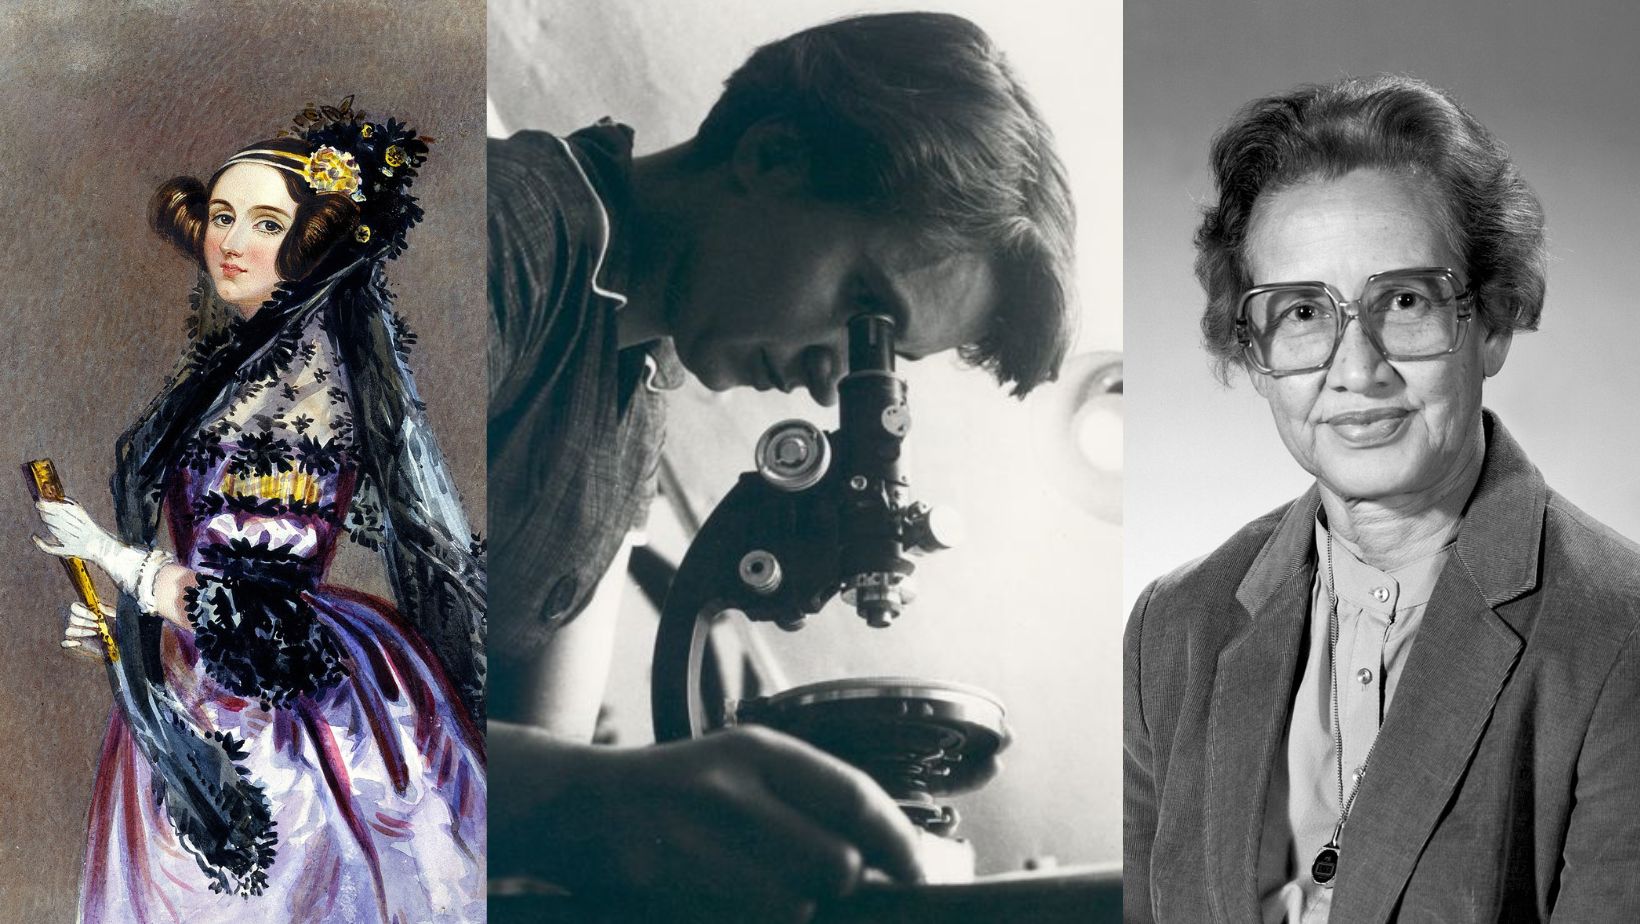 Måleri av kvinne med staselege klede, kvinne med mikroskop og kvinne med briller